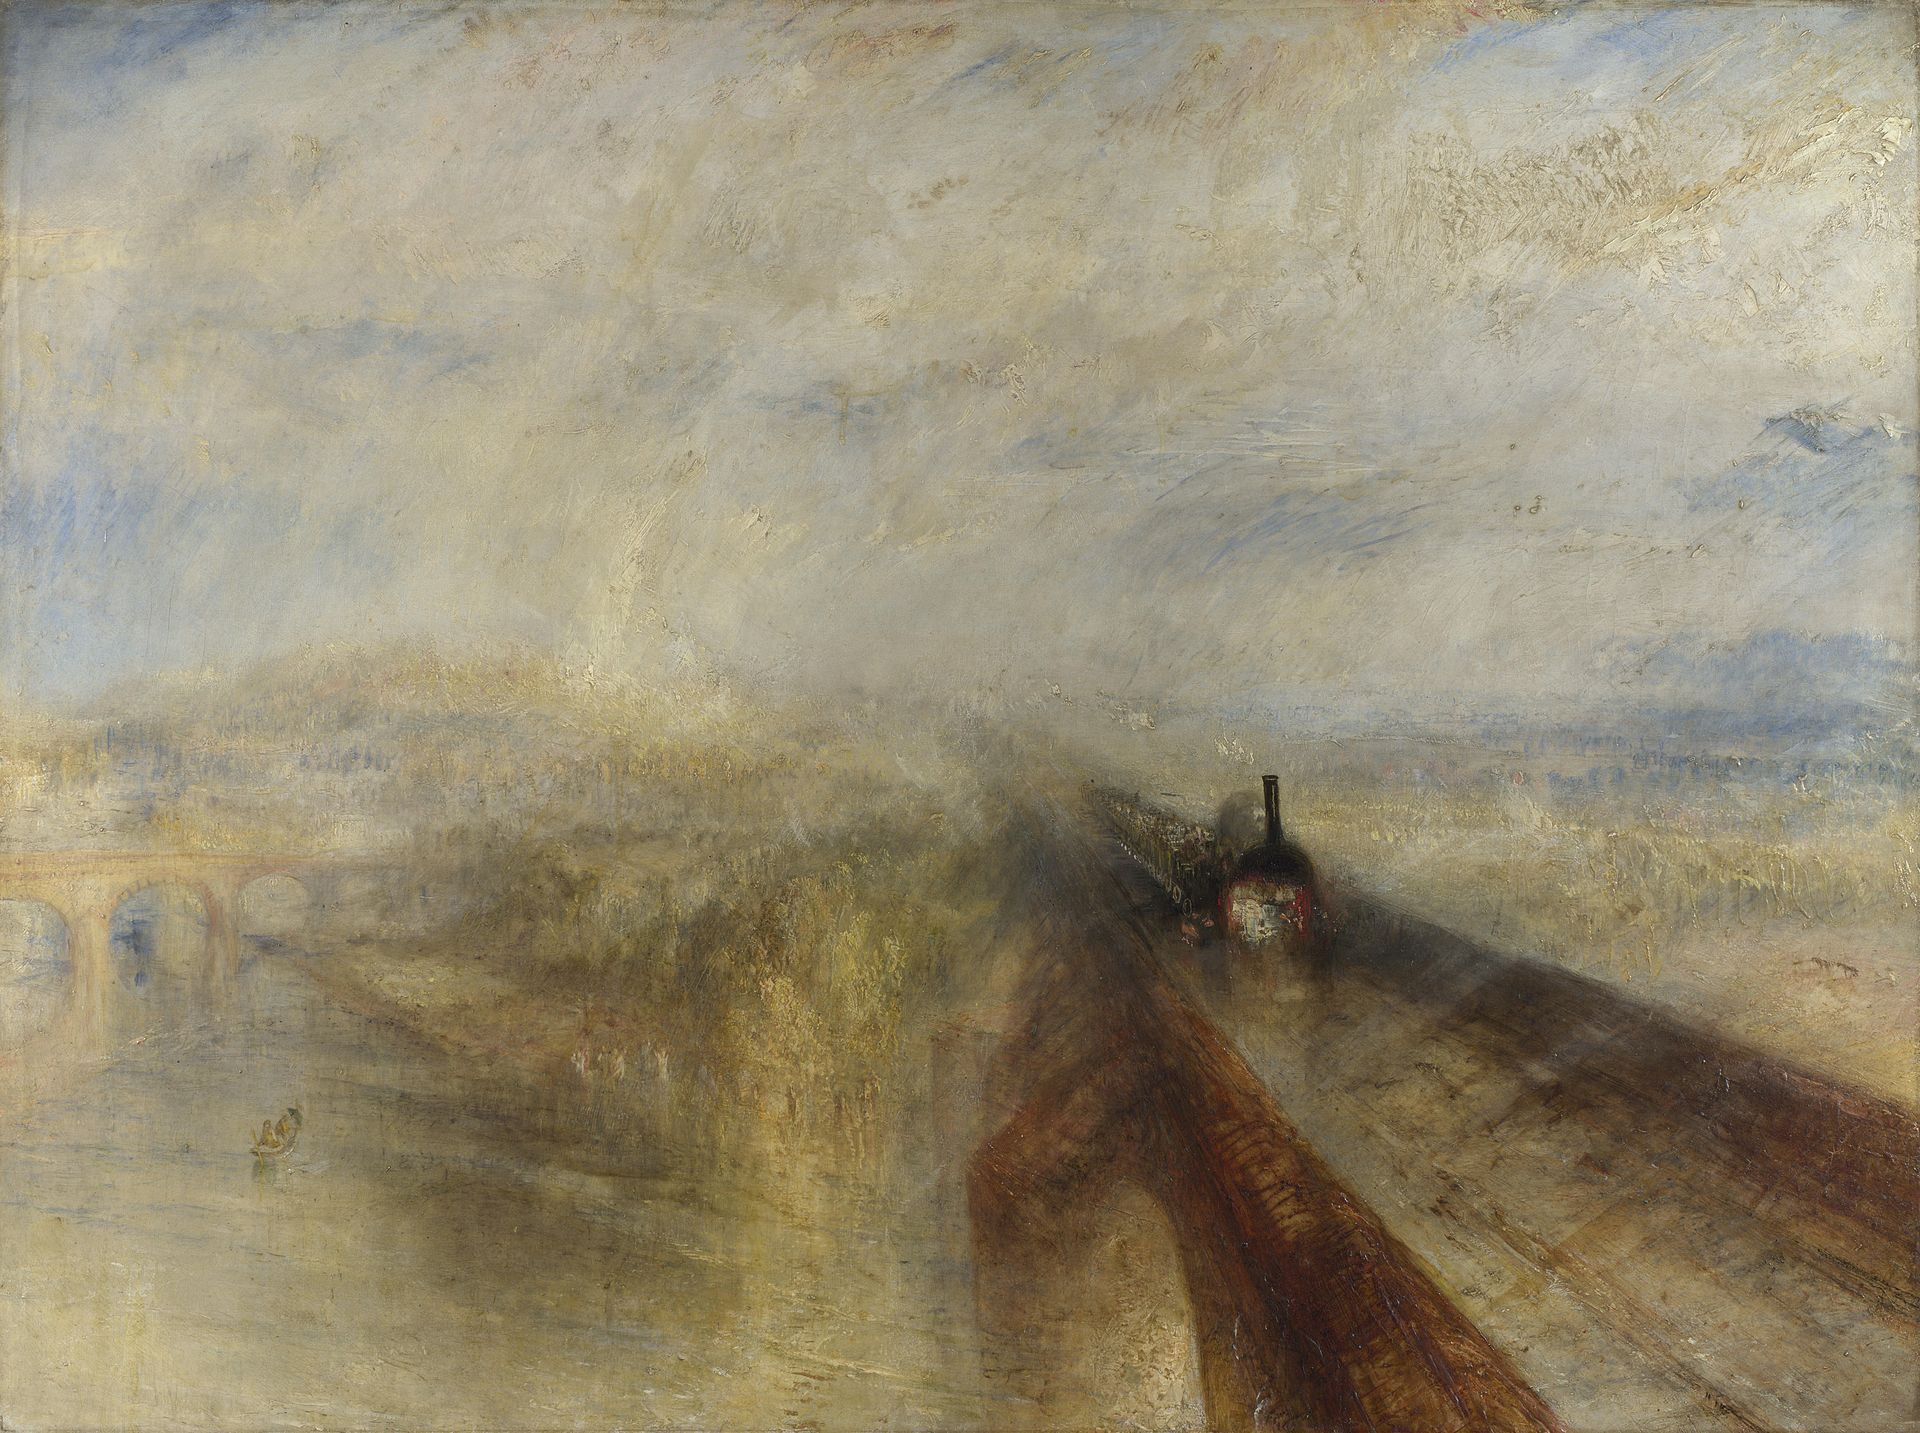 Pioggia, vapore e velocità (La grande ferrovia occidentale) by Joseph Mallord William Turner - 1844 - 91 x 121.8 cm 